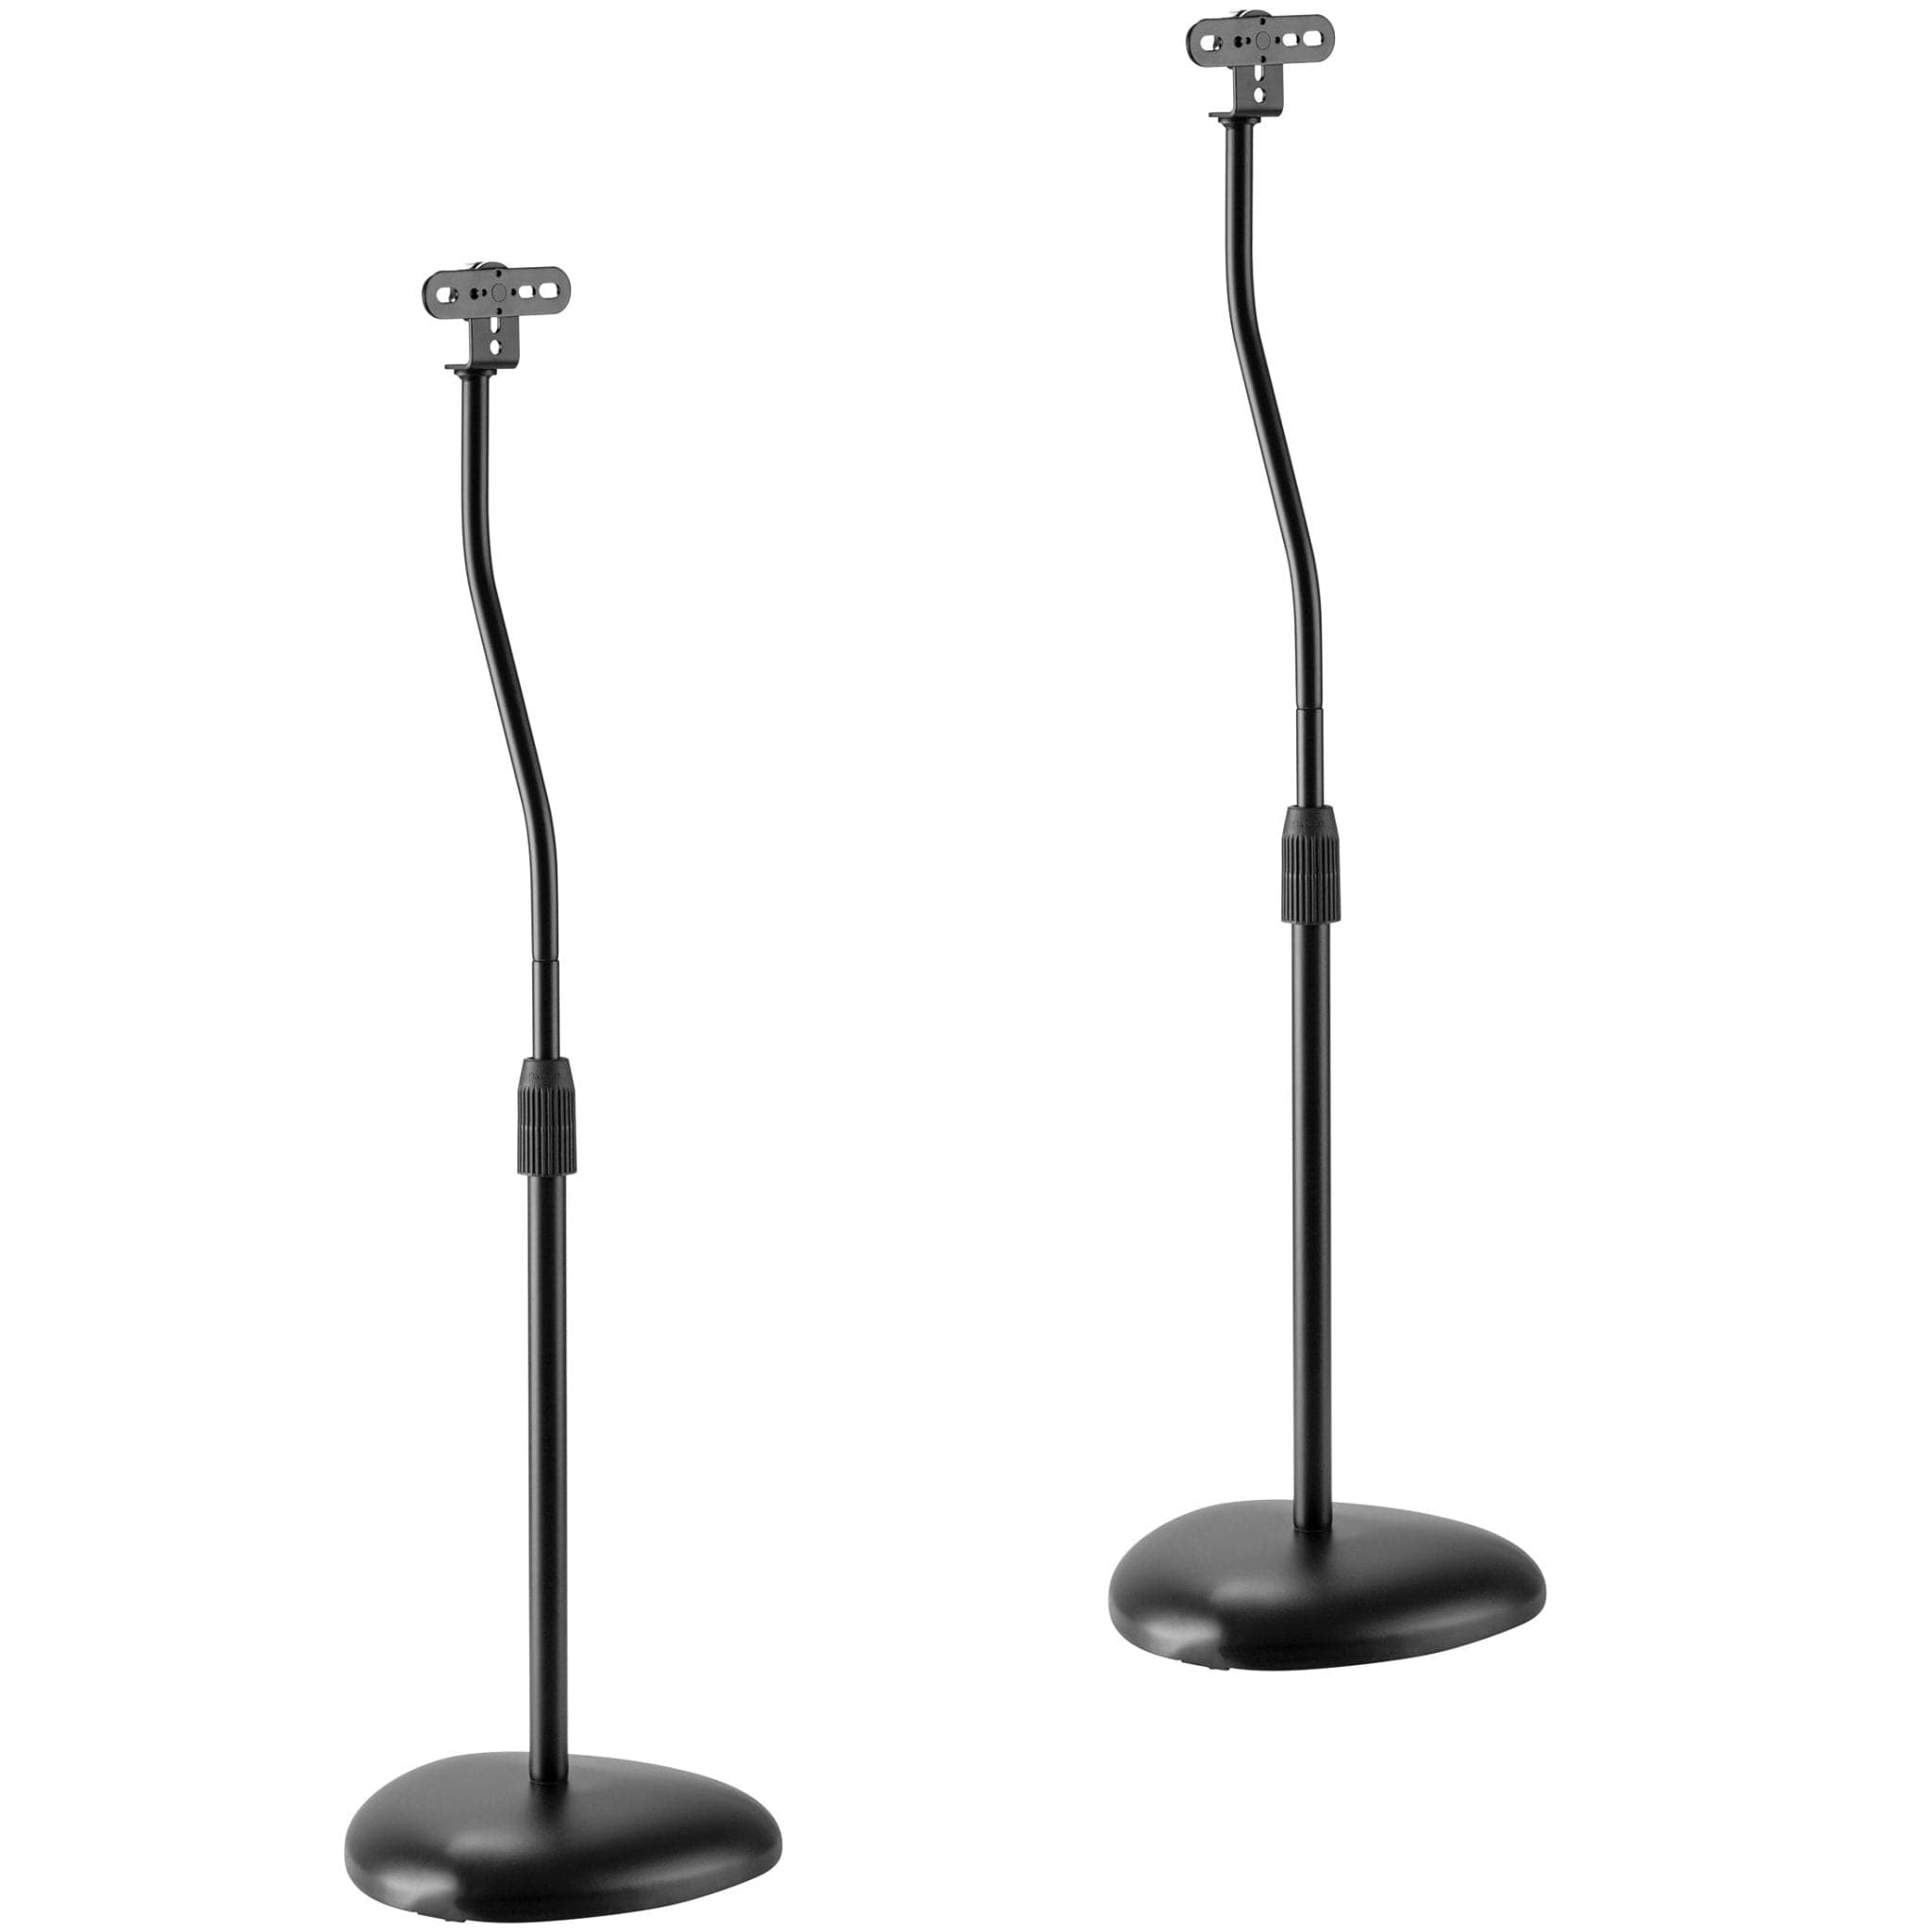 Height Adjustable Speaker Floor Stands (2 ct.) - Mount-It!